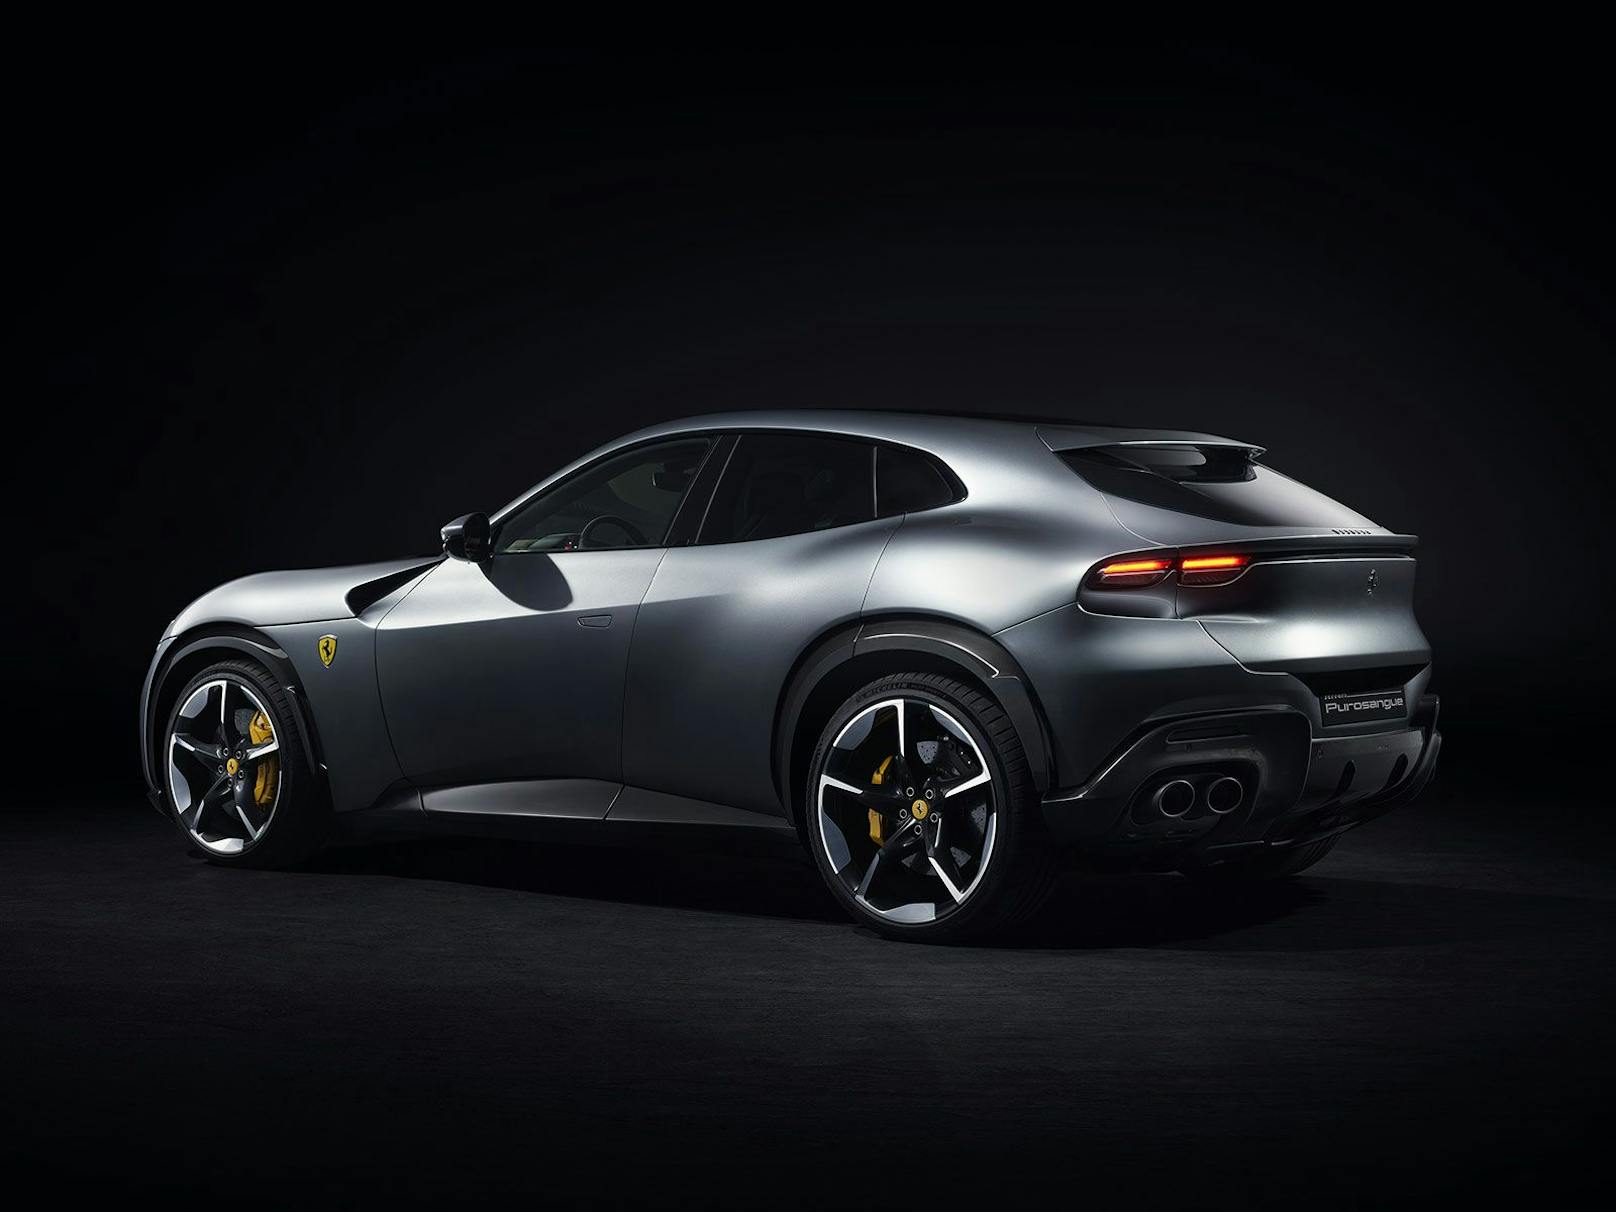 Das Design entspricht der neuen Ferrari-Designlinie und zeigt sich sehr dynamisch.